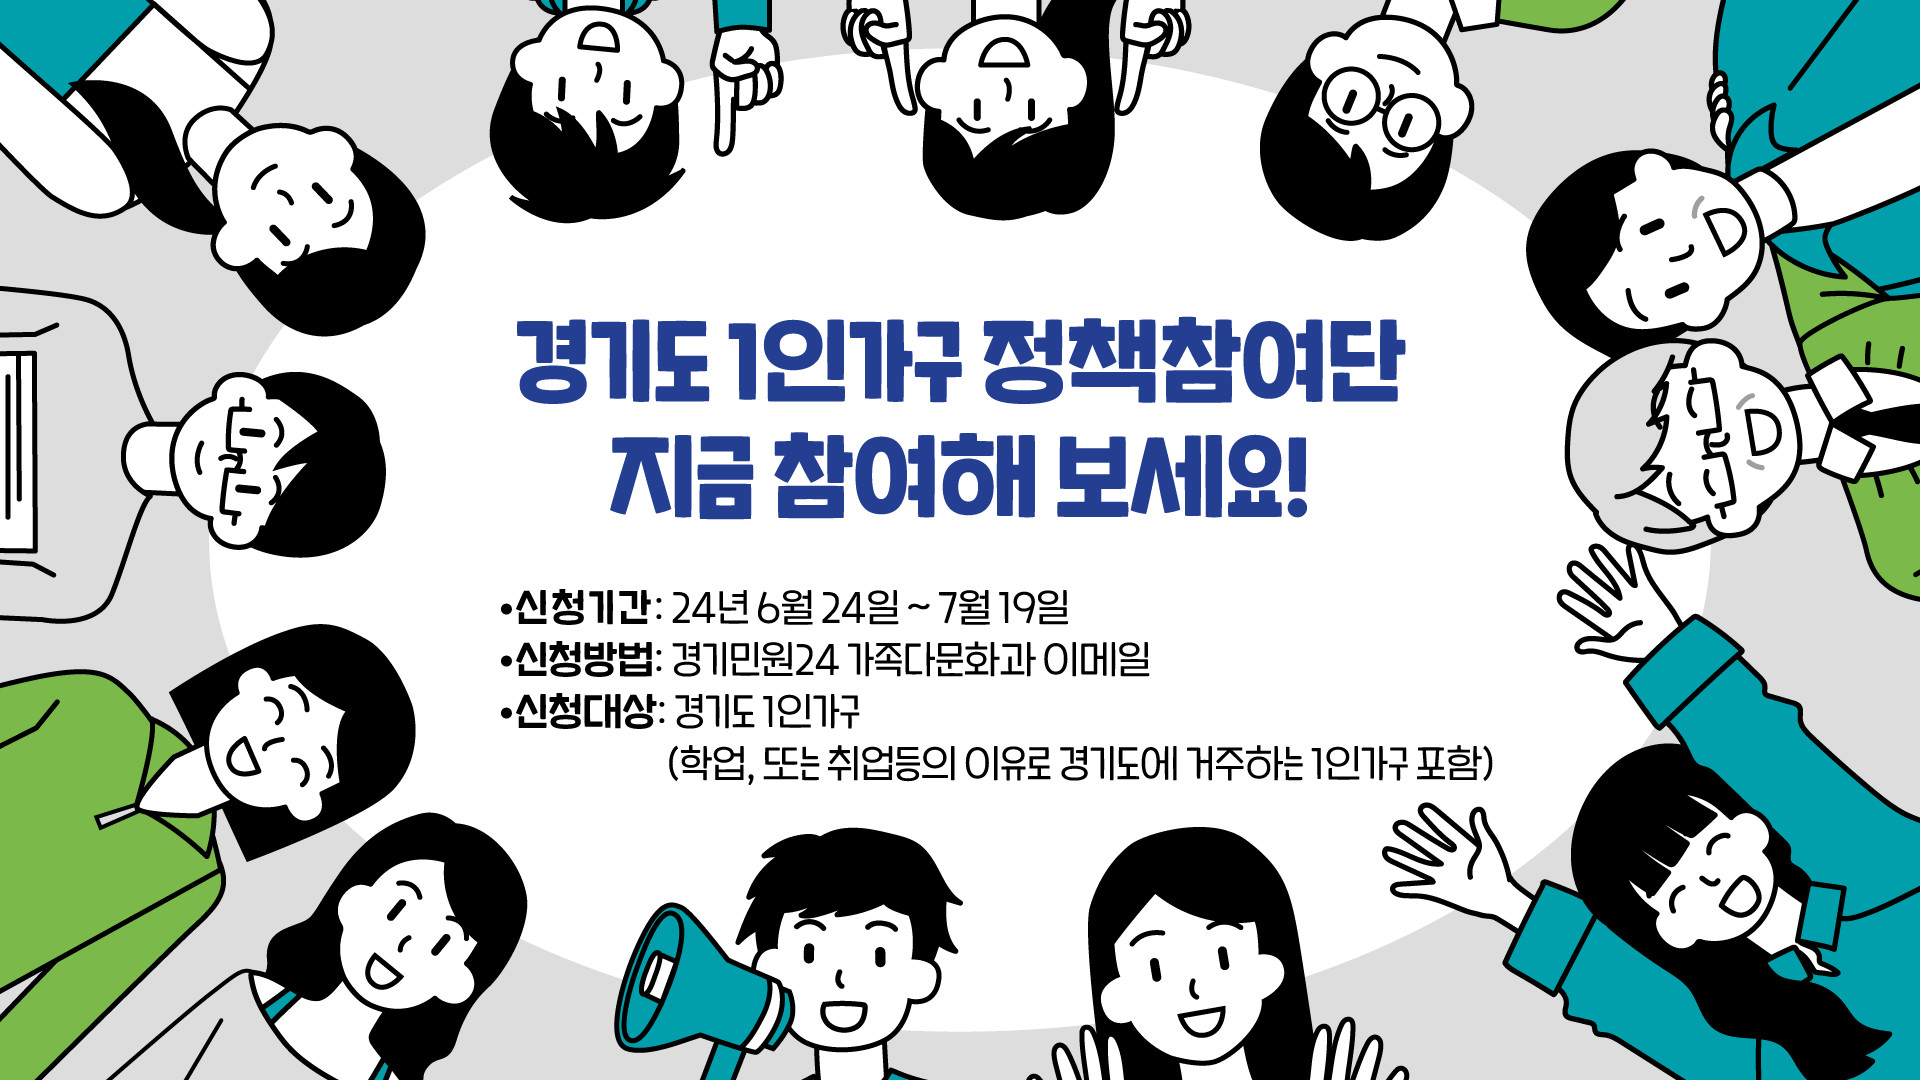 경기도 1인가구 정책참여단 모집